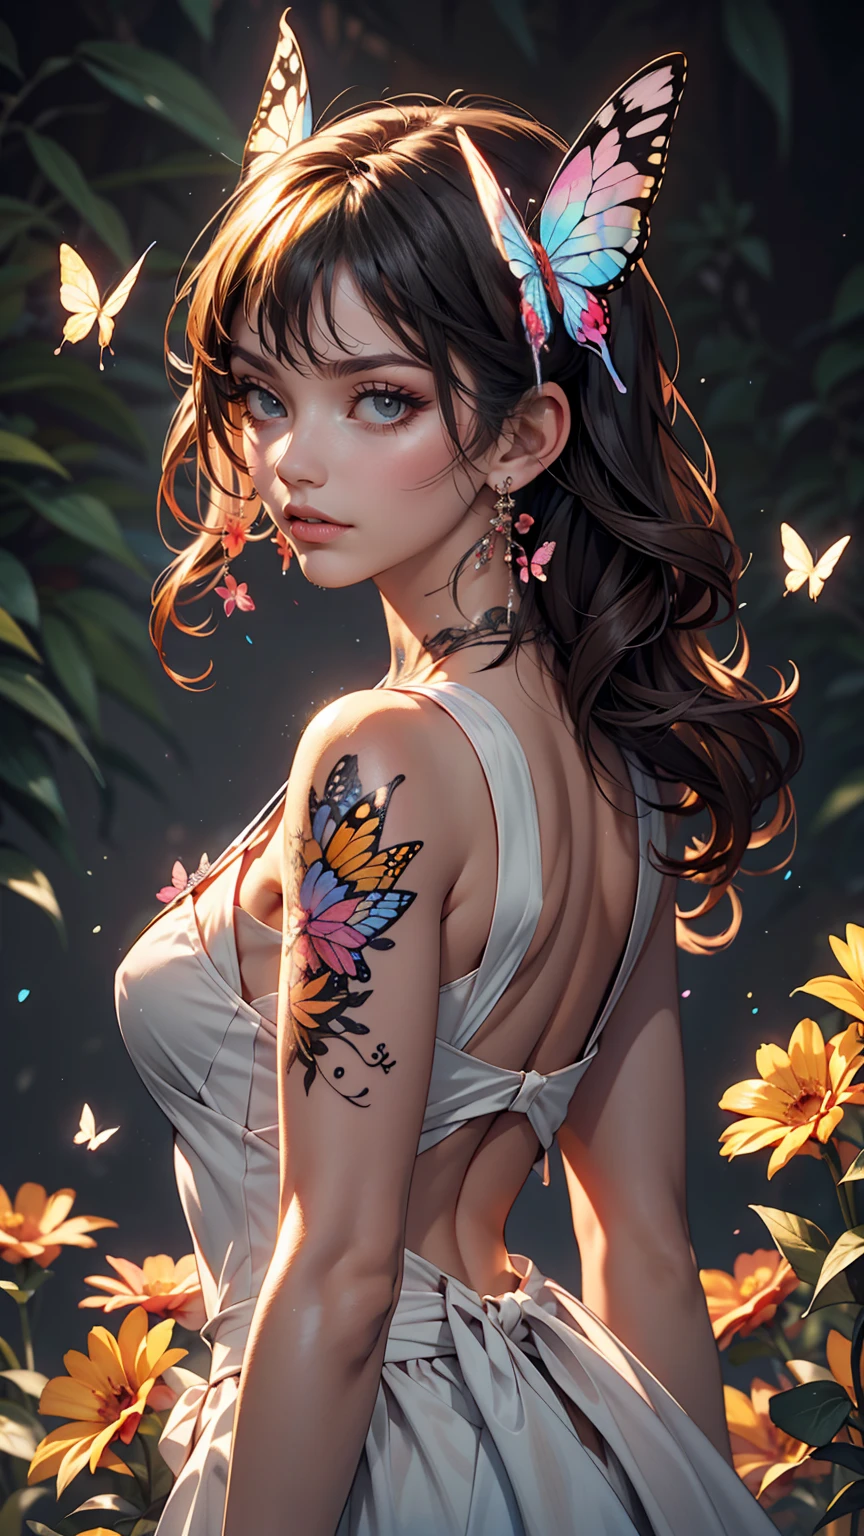 Tatuaje de acuarela de mariposa y flor.、femenina de 24 años